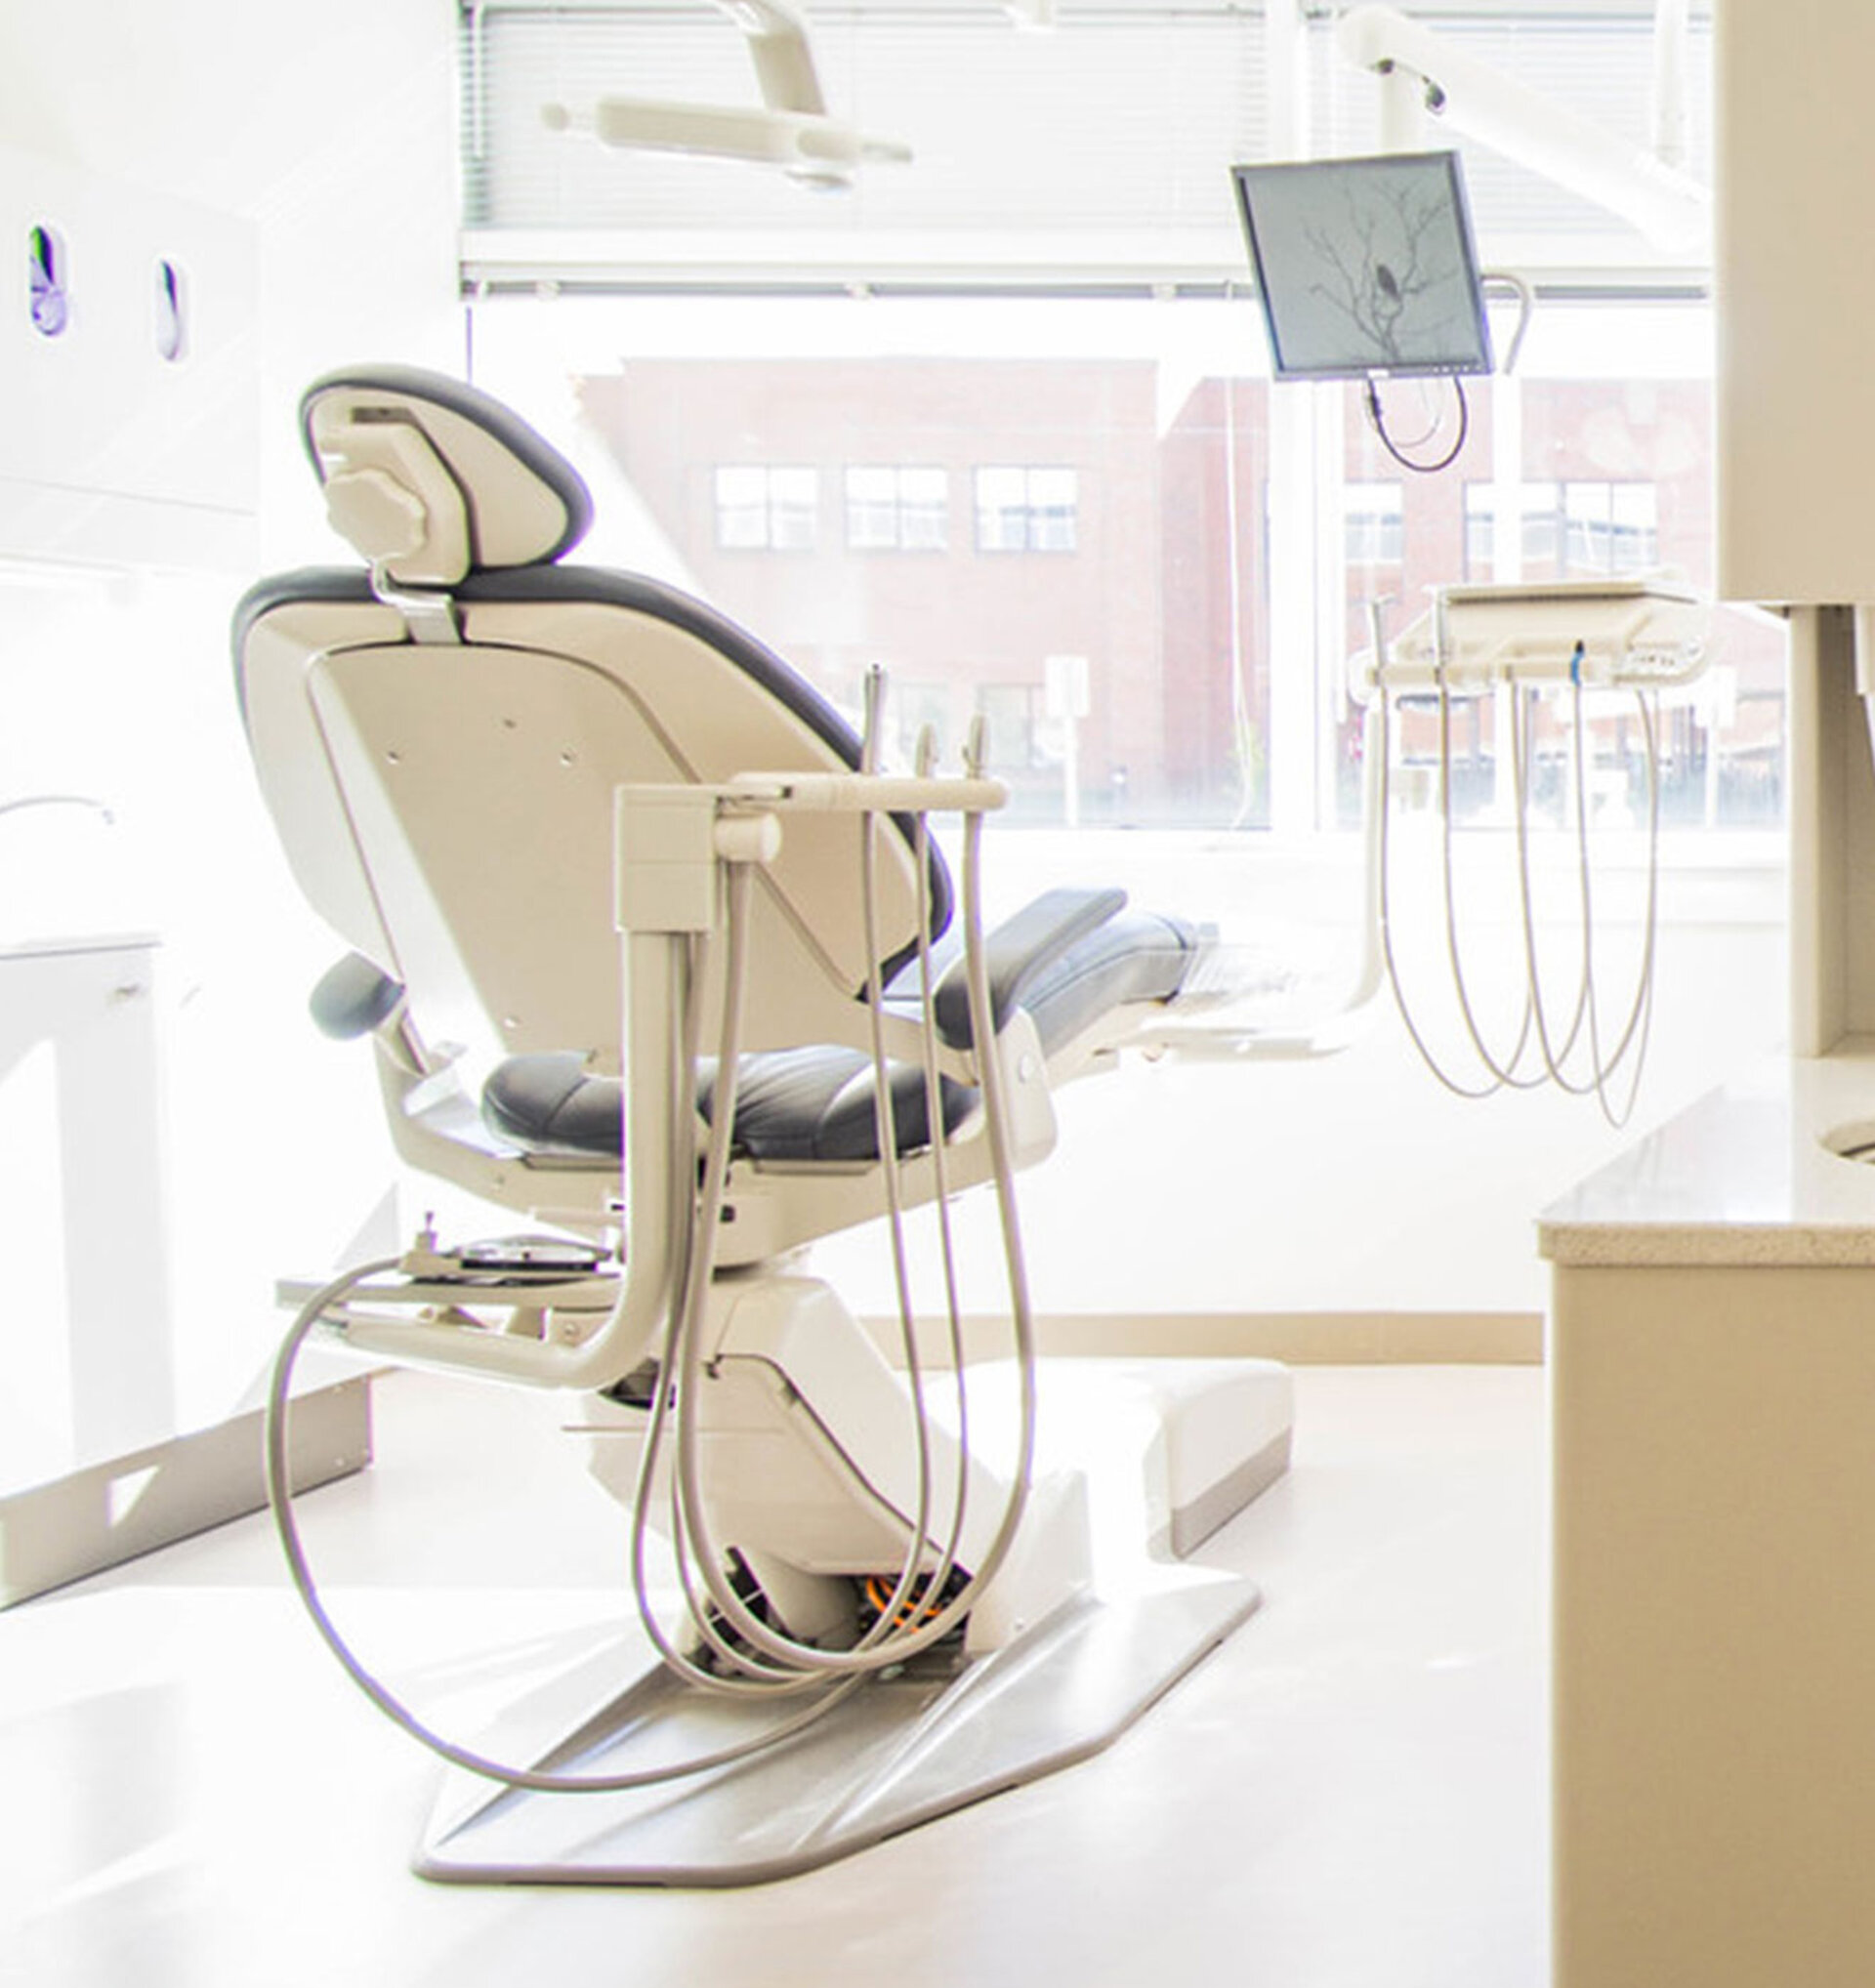 Danmarks største leverandør af udstyr, IT og uddannelse til tandlægeklinikker, Plandent, henter i dag størstedelen af deres omsætning på nettet